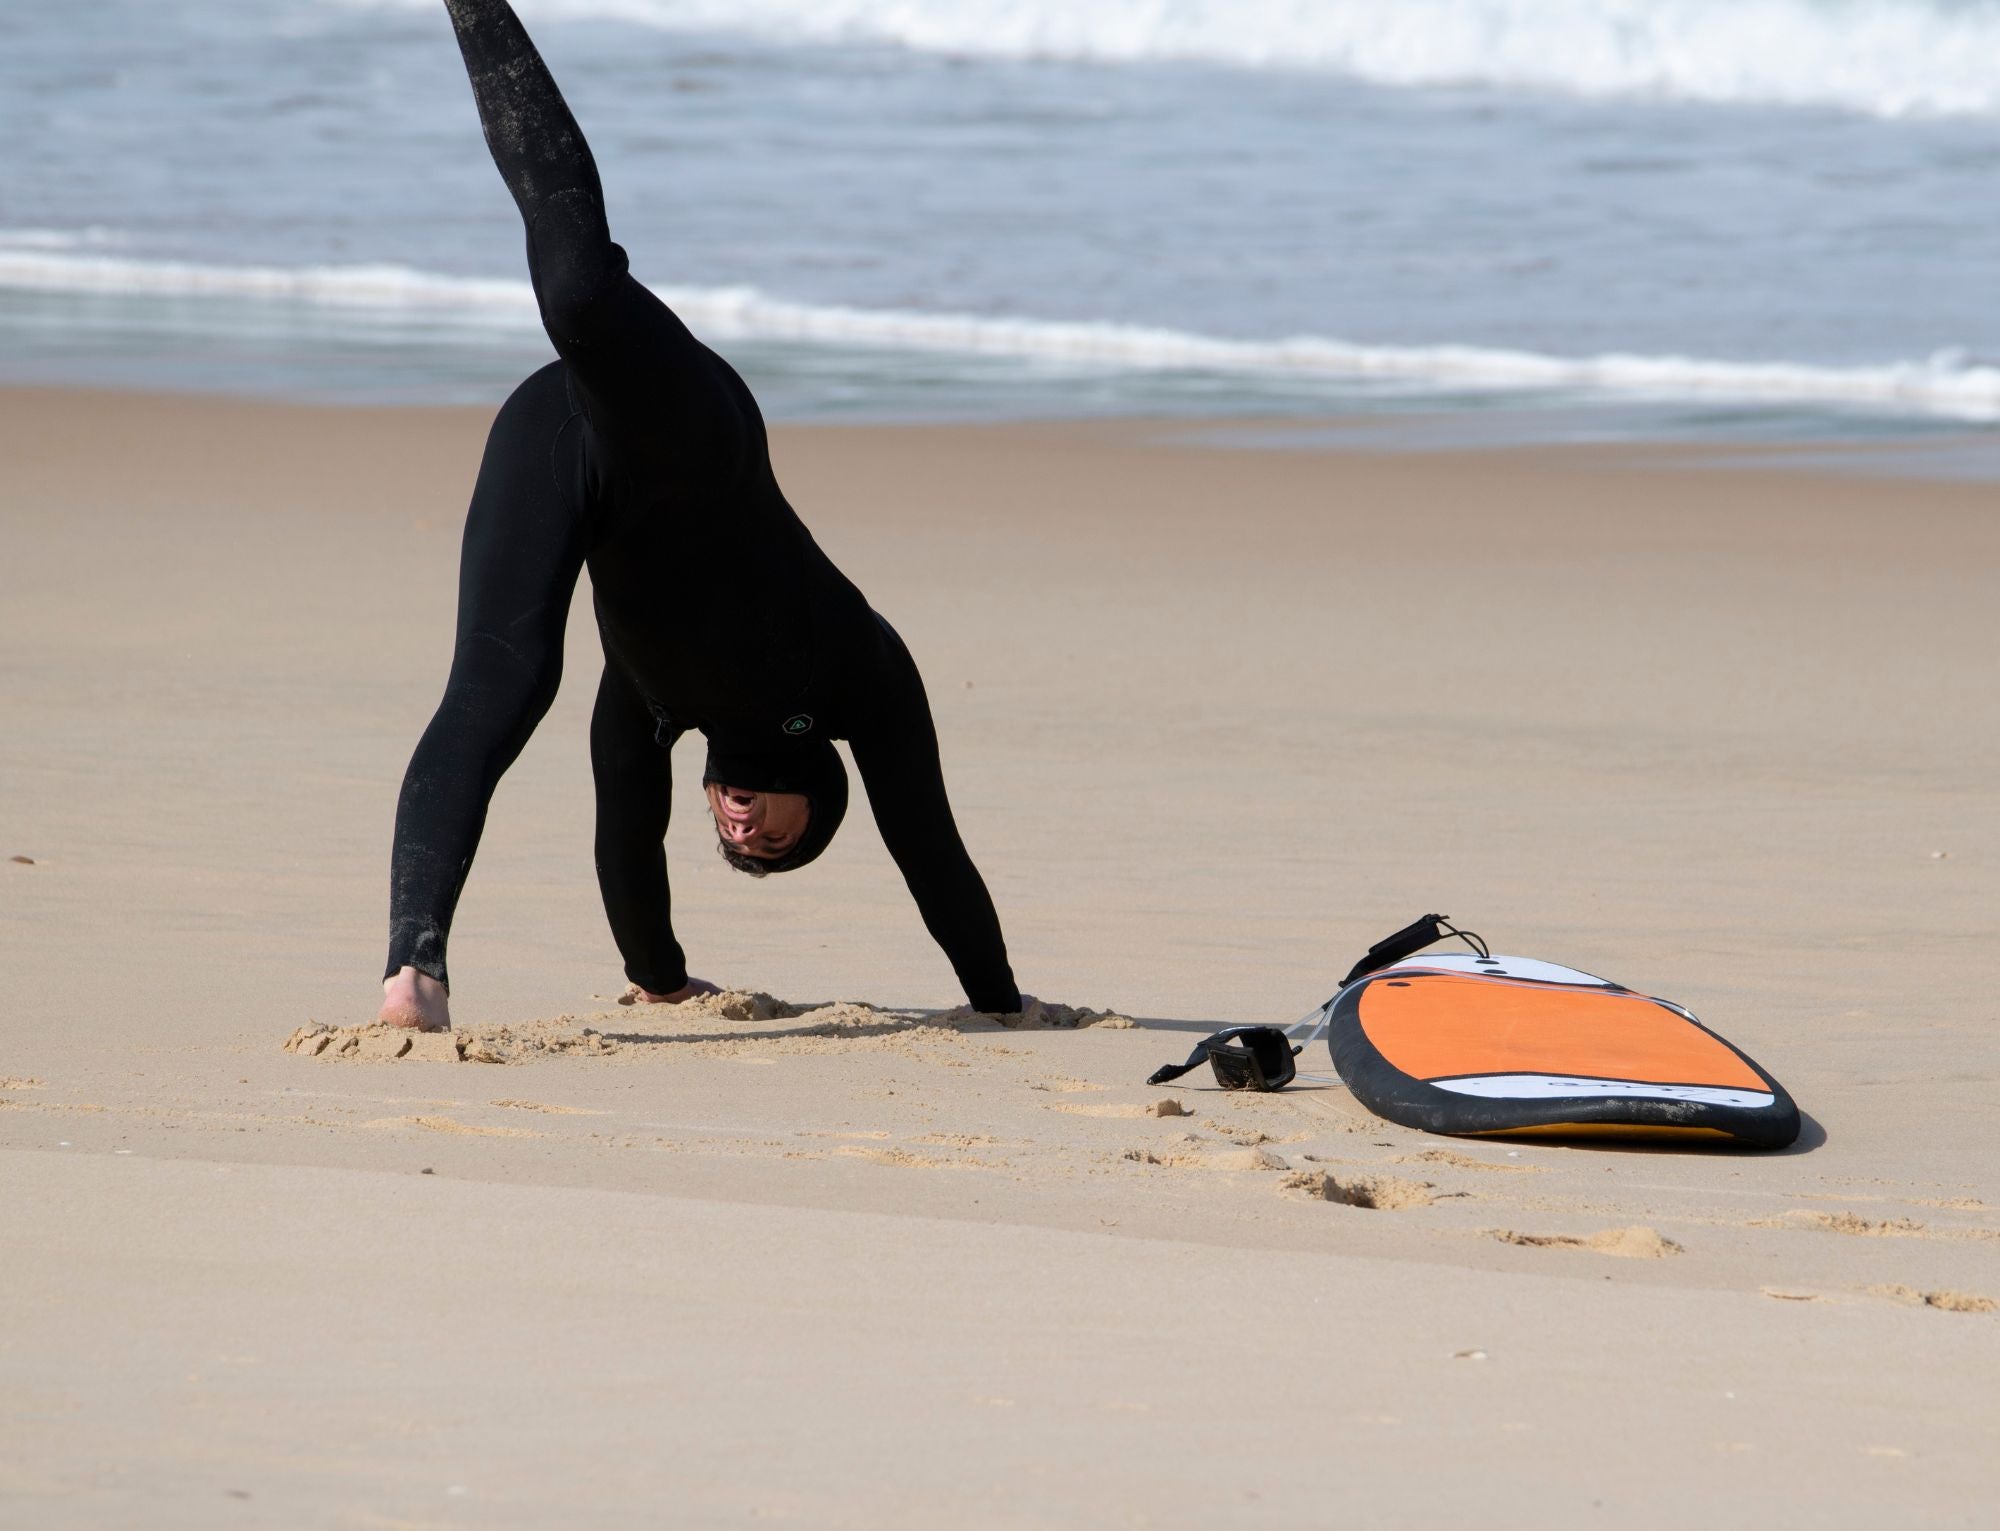 Un surfista con traje de neopreno completo calentando en la playa.